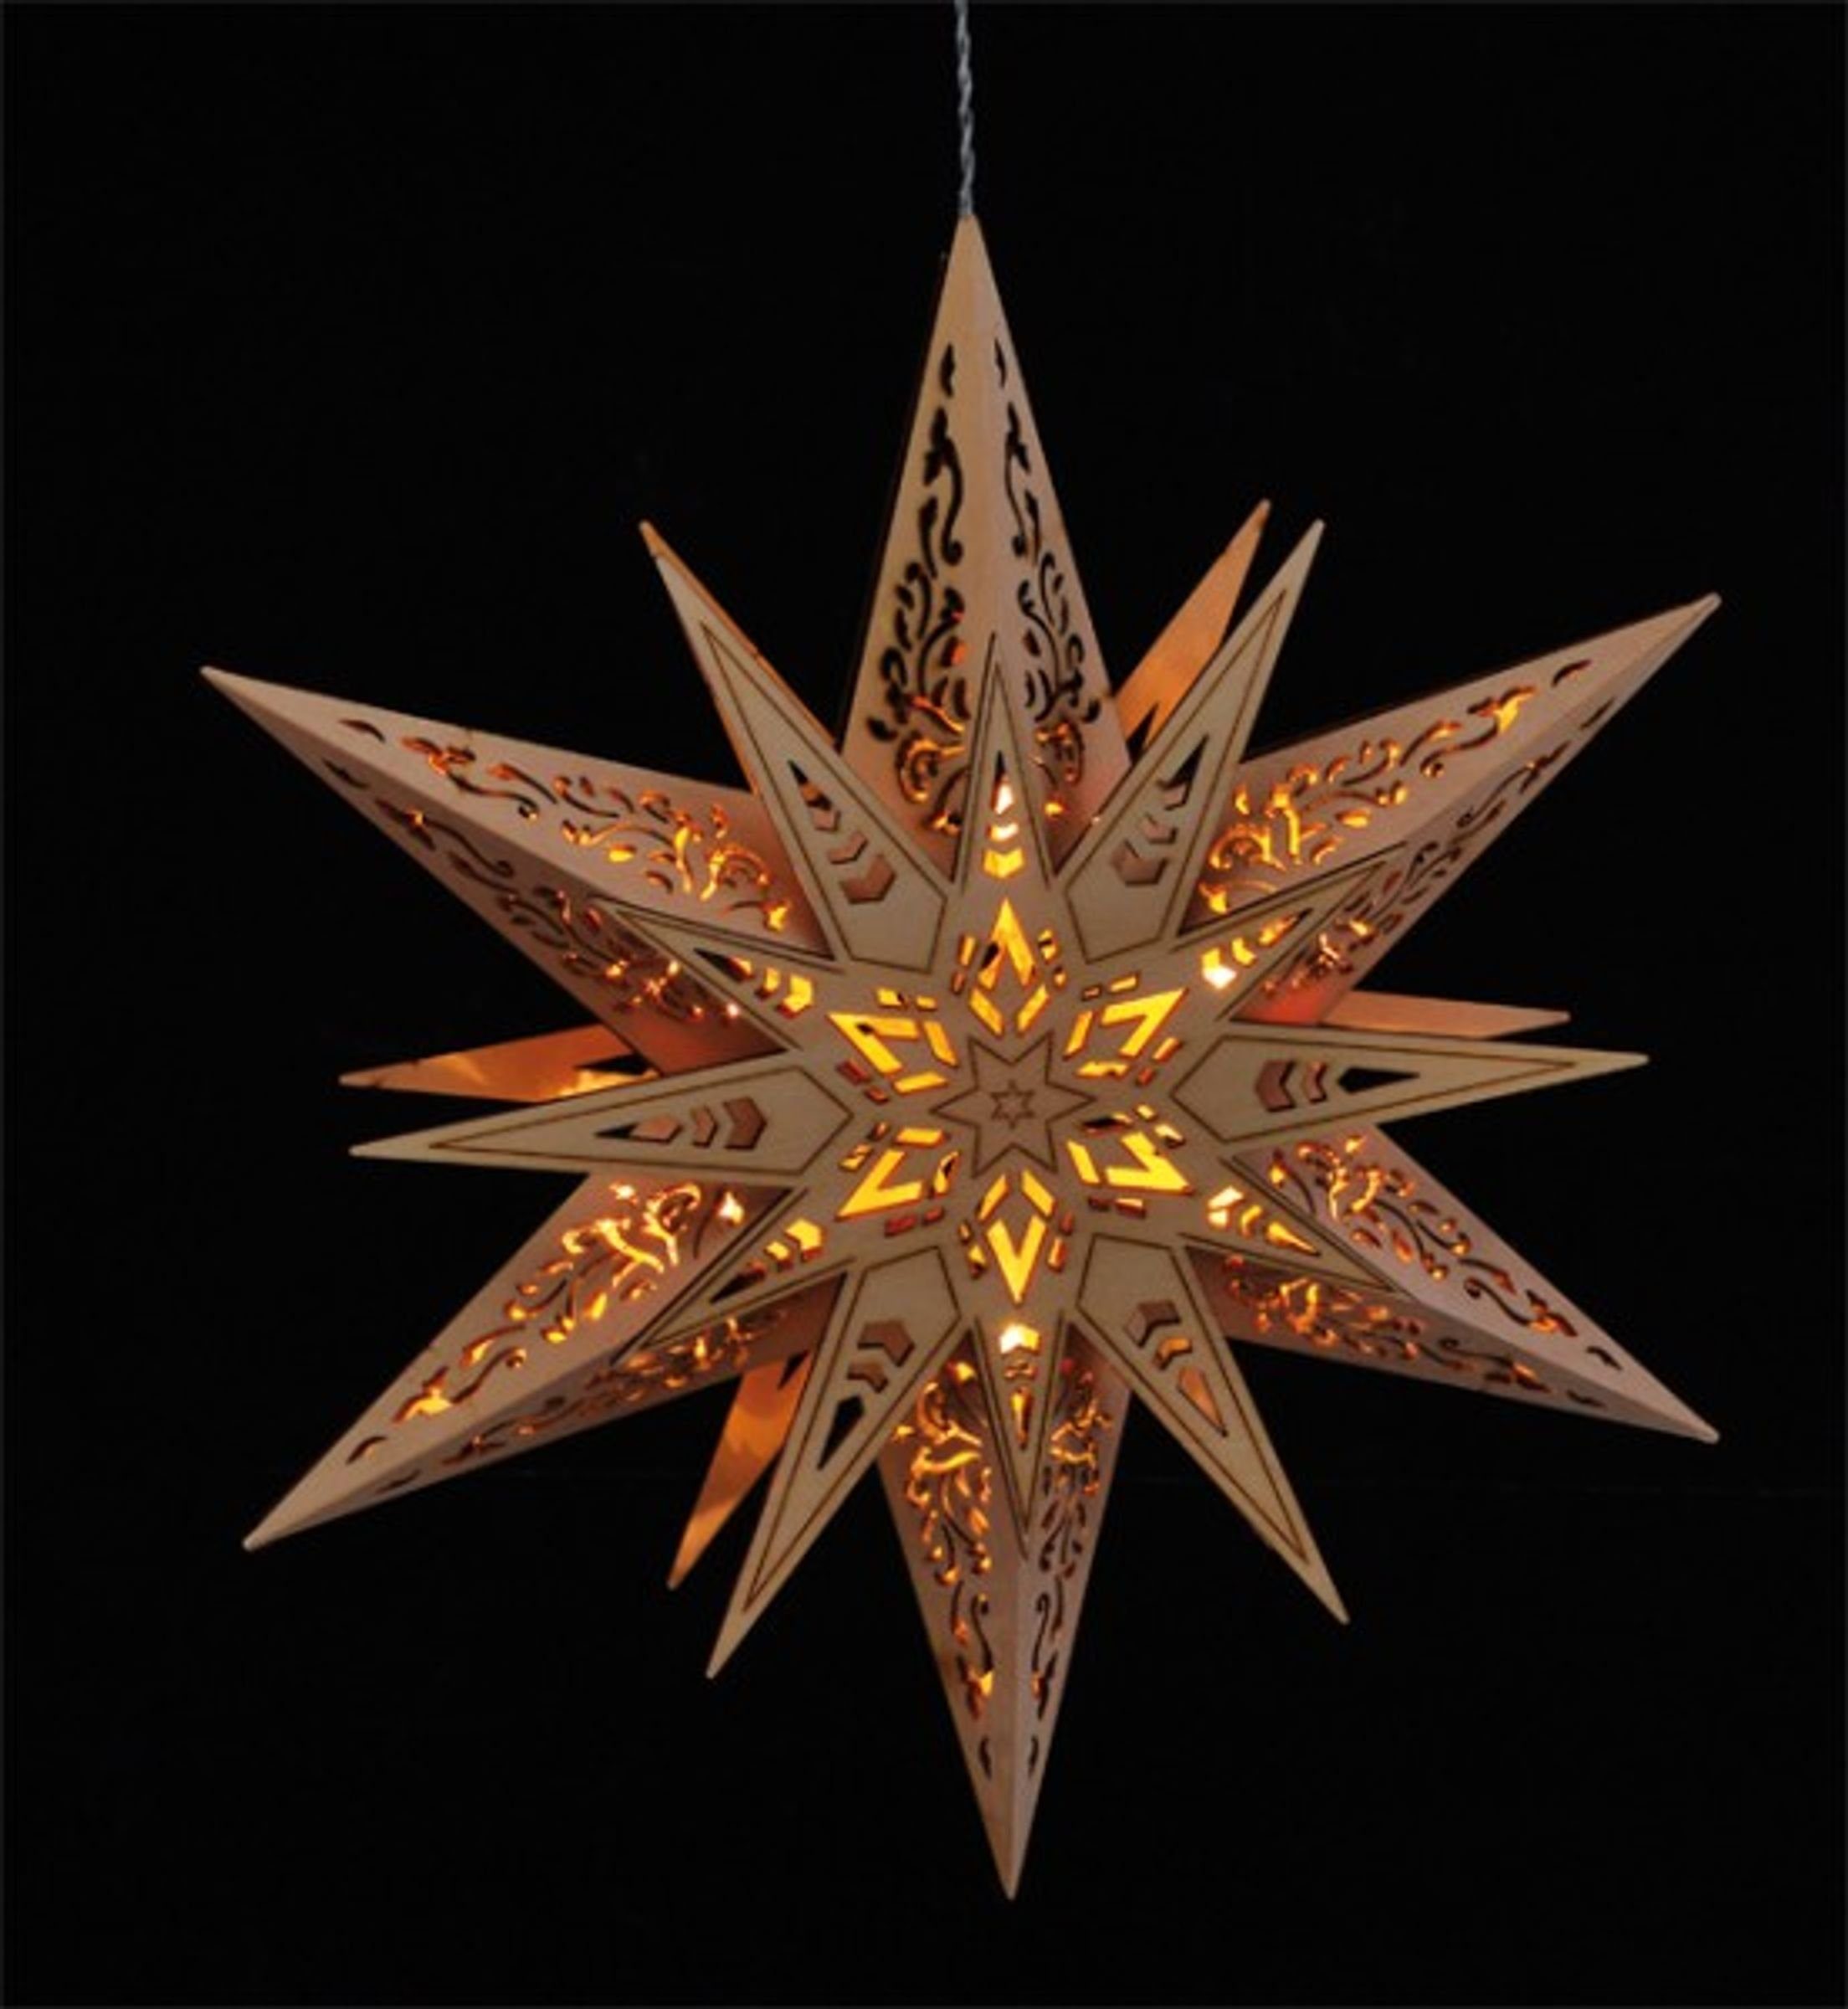 Haushalt International LED Stern Beleuchteter Weihnachtsbeleuchtung Holz Weihnachtsdeko Stern aus